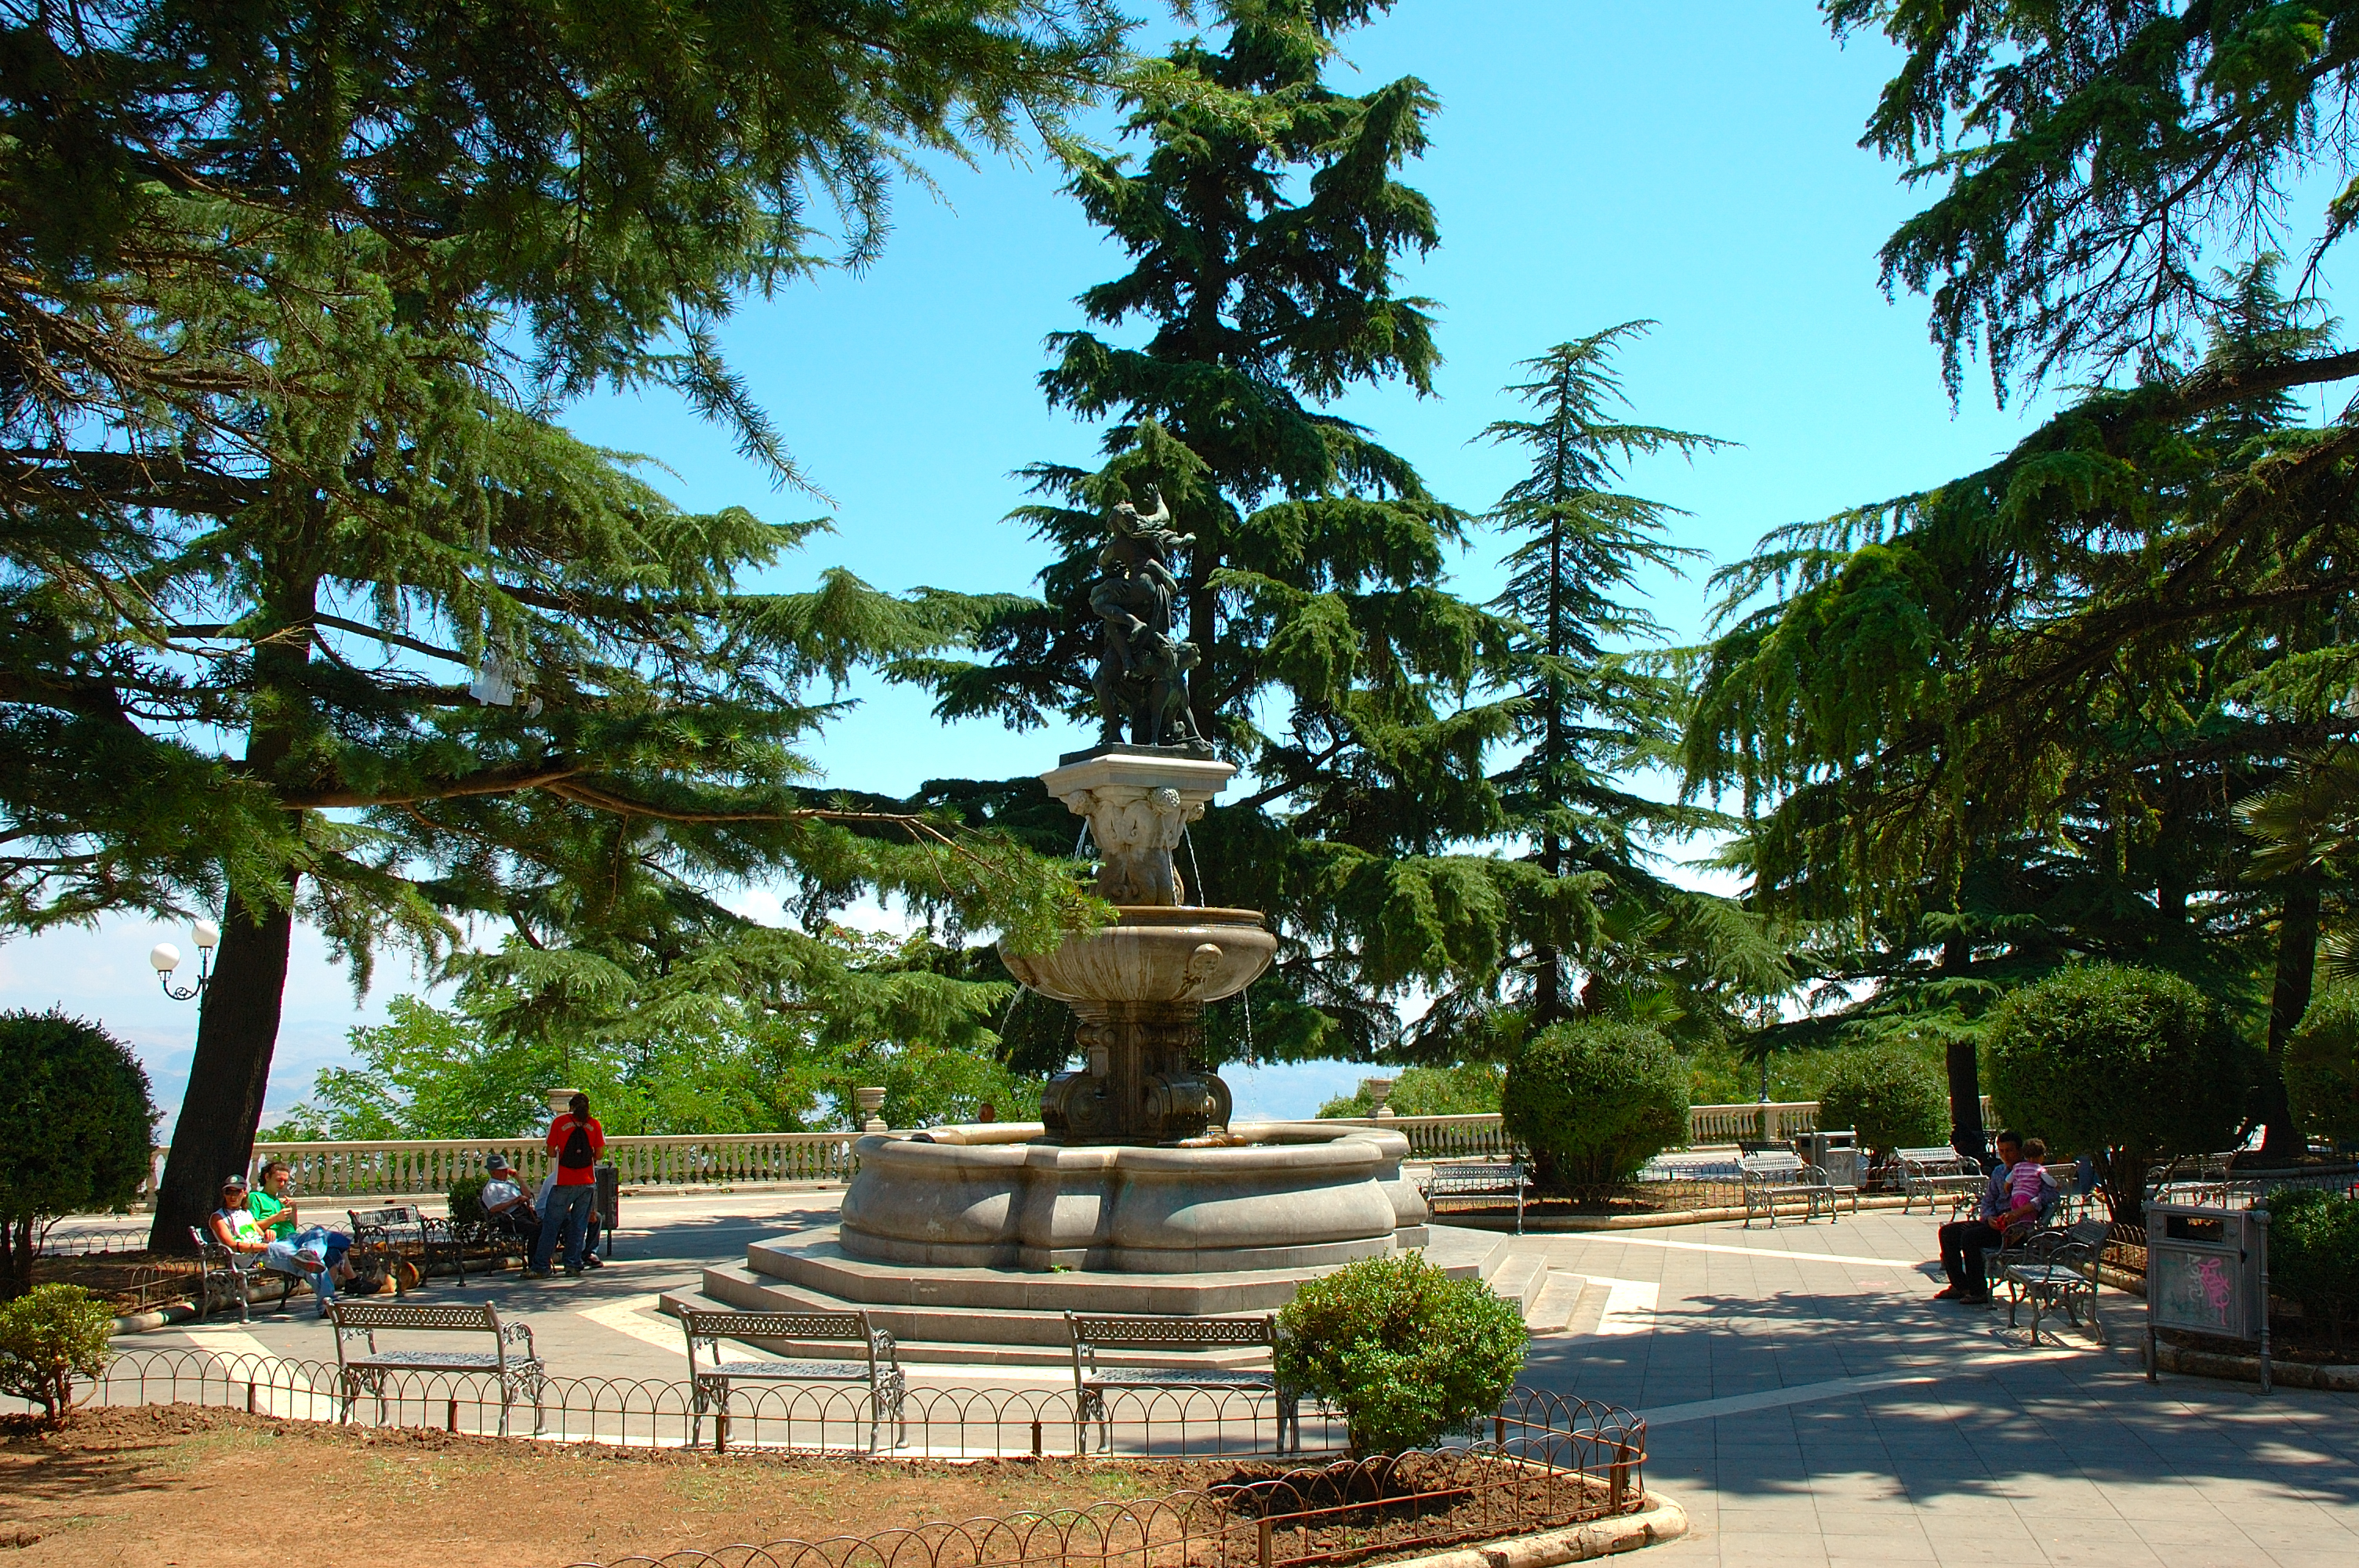 Il Belvedere - Piazza panoramica nel centro storico di Enna